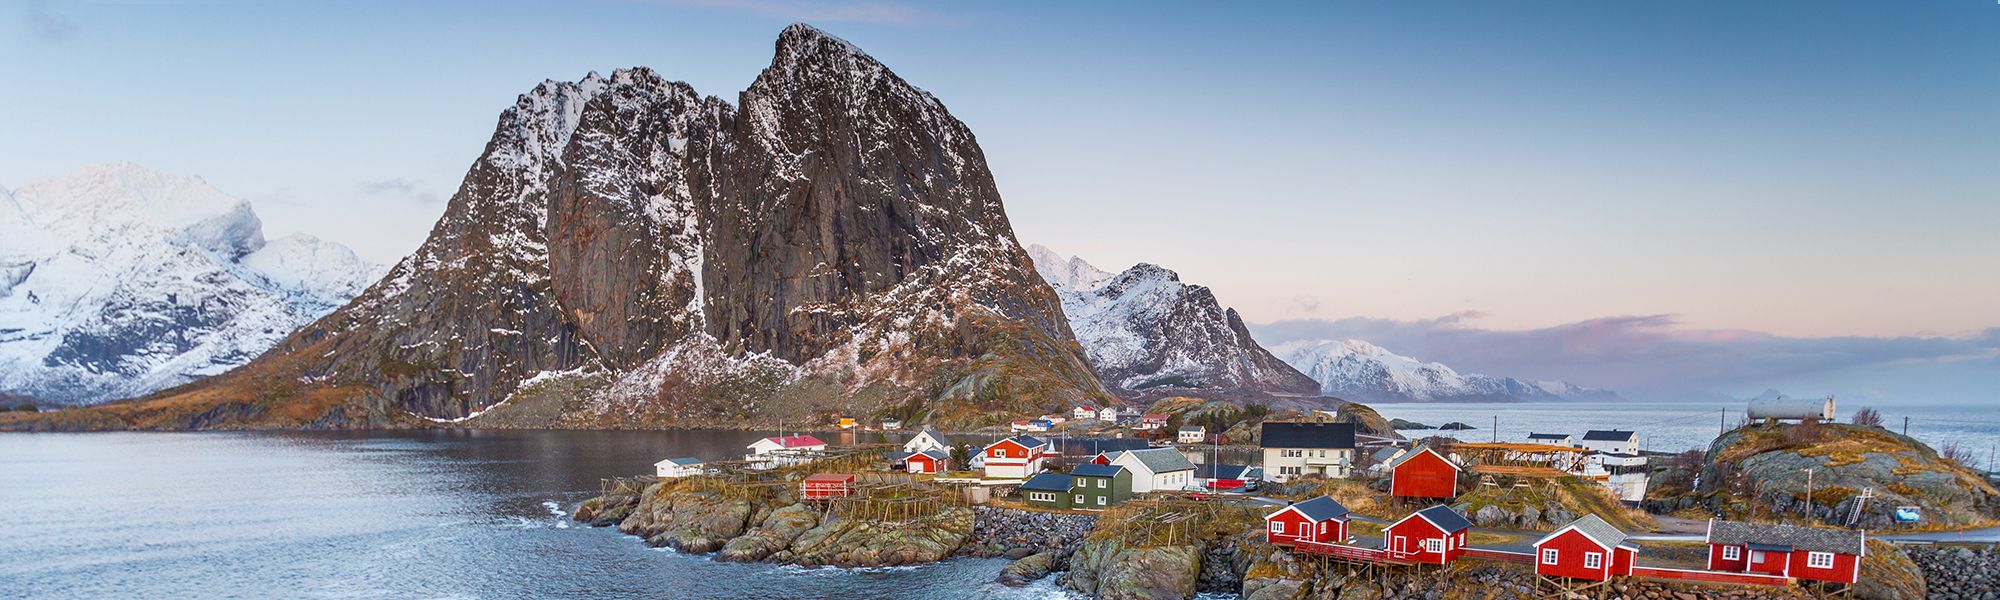 Croisière et voile Cap Nord © Alex Cornu - Visit Norway